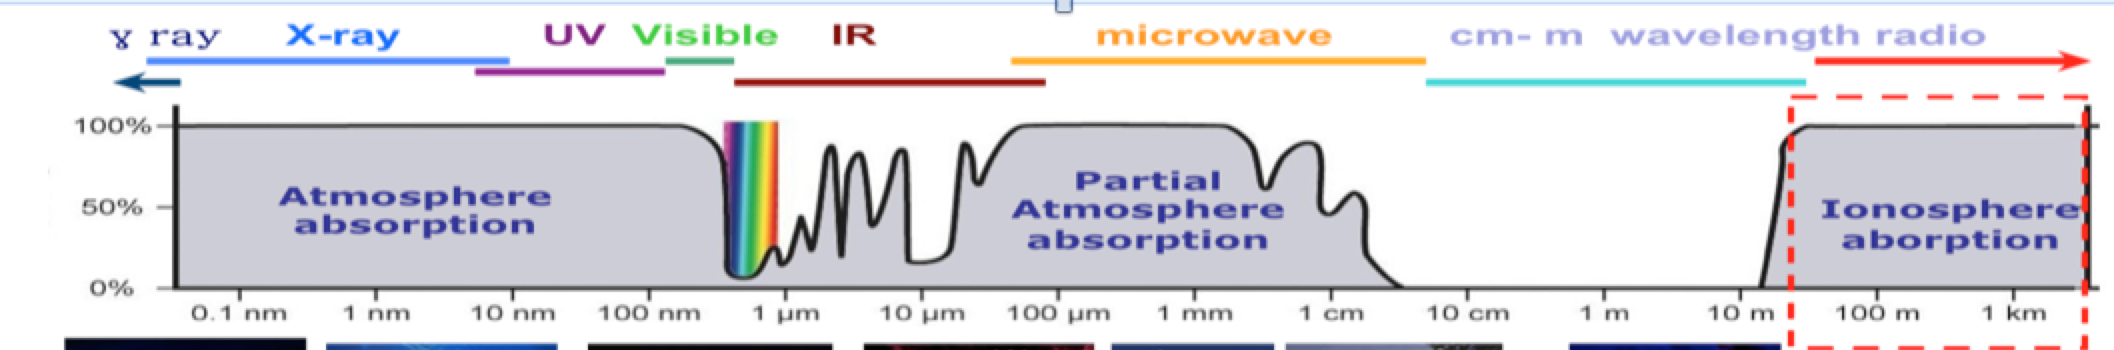 atmosphereabsorption.png